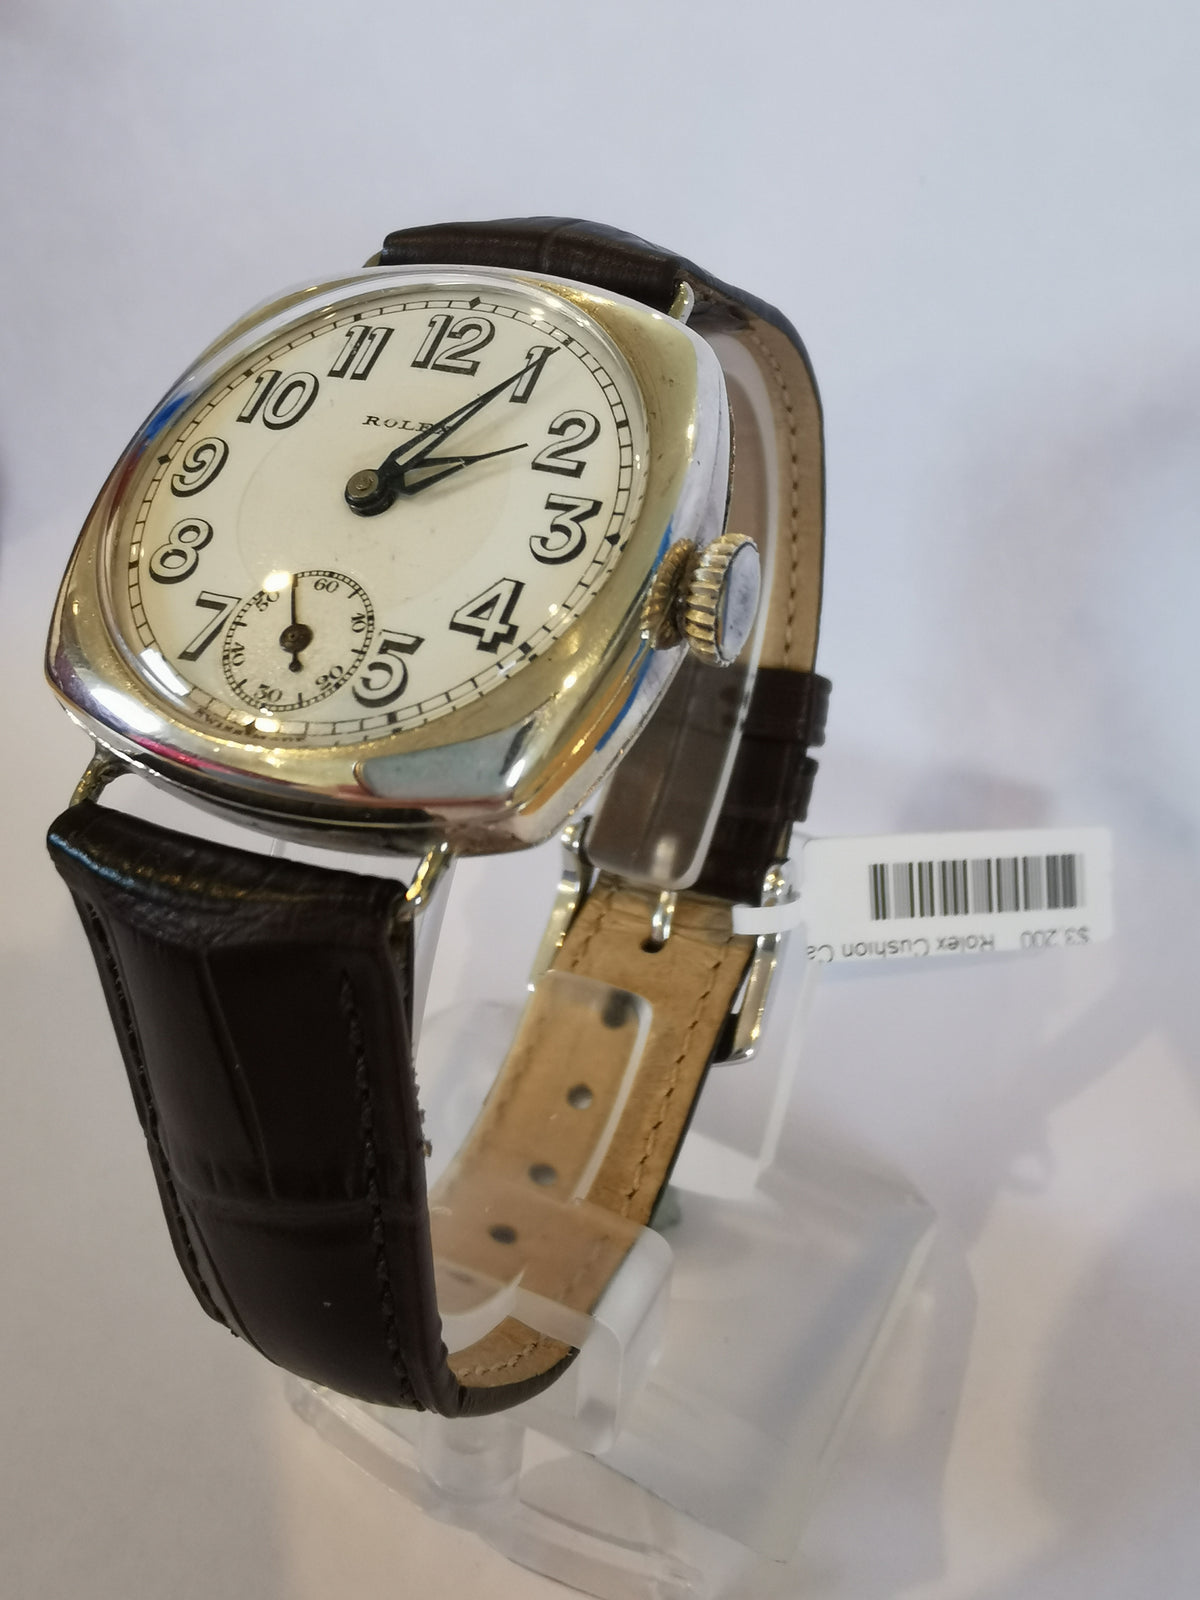 Rolex Manual Wind Watch